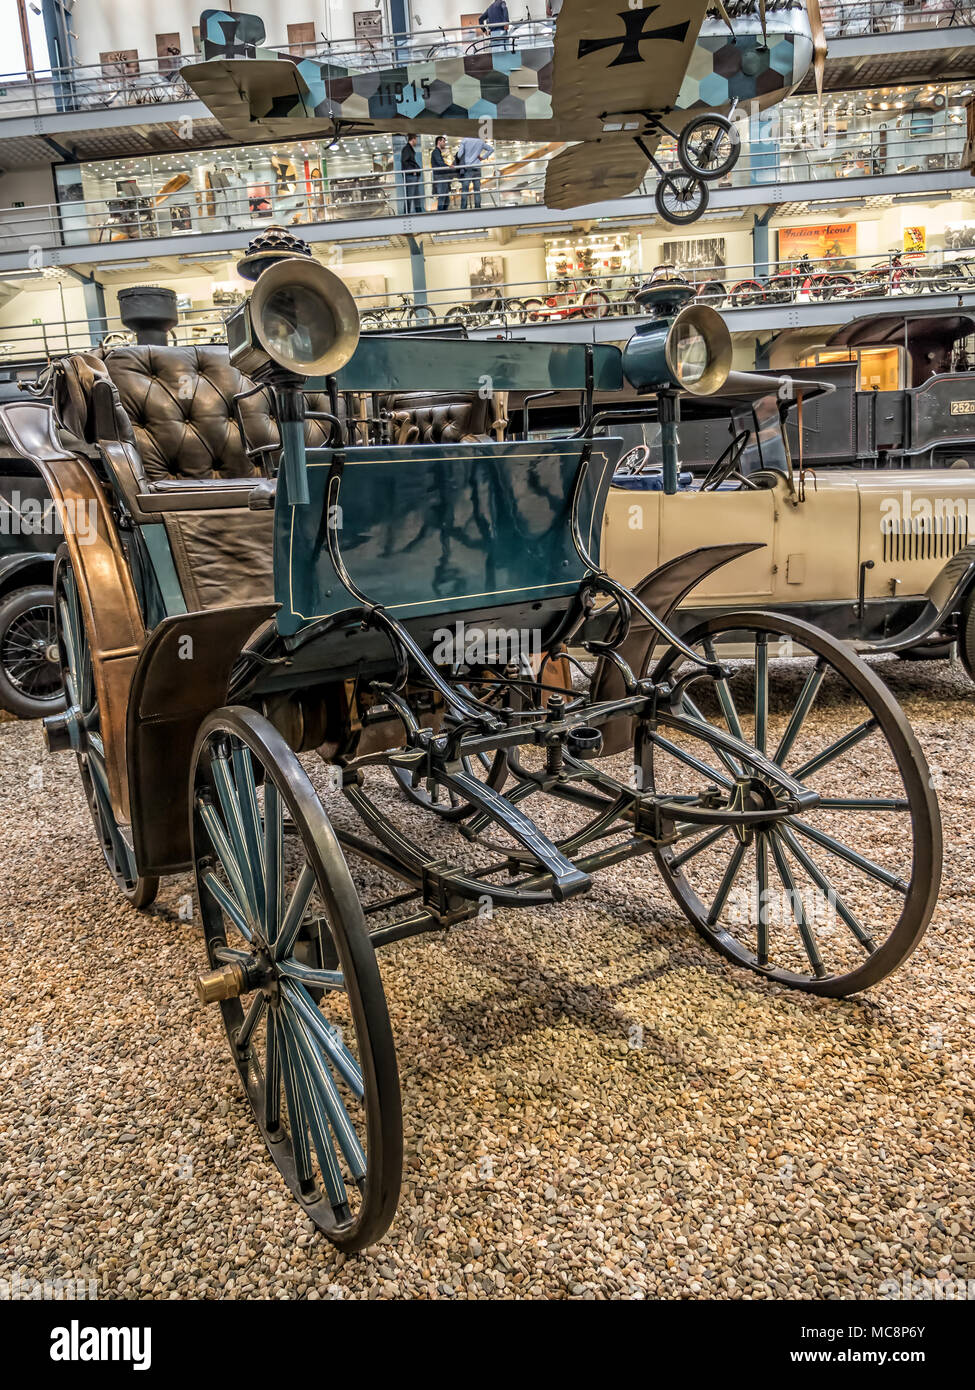 PRAGUE, RÉPUBLIQUE TCHÈQUE - 8 mars 2017 : Oldtimer Benz Victoria 1893 dans le Musée Technique National de Prague, Logement transport historique exhib Banque D'Images